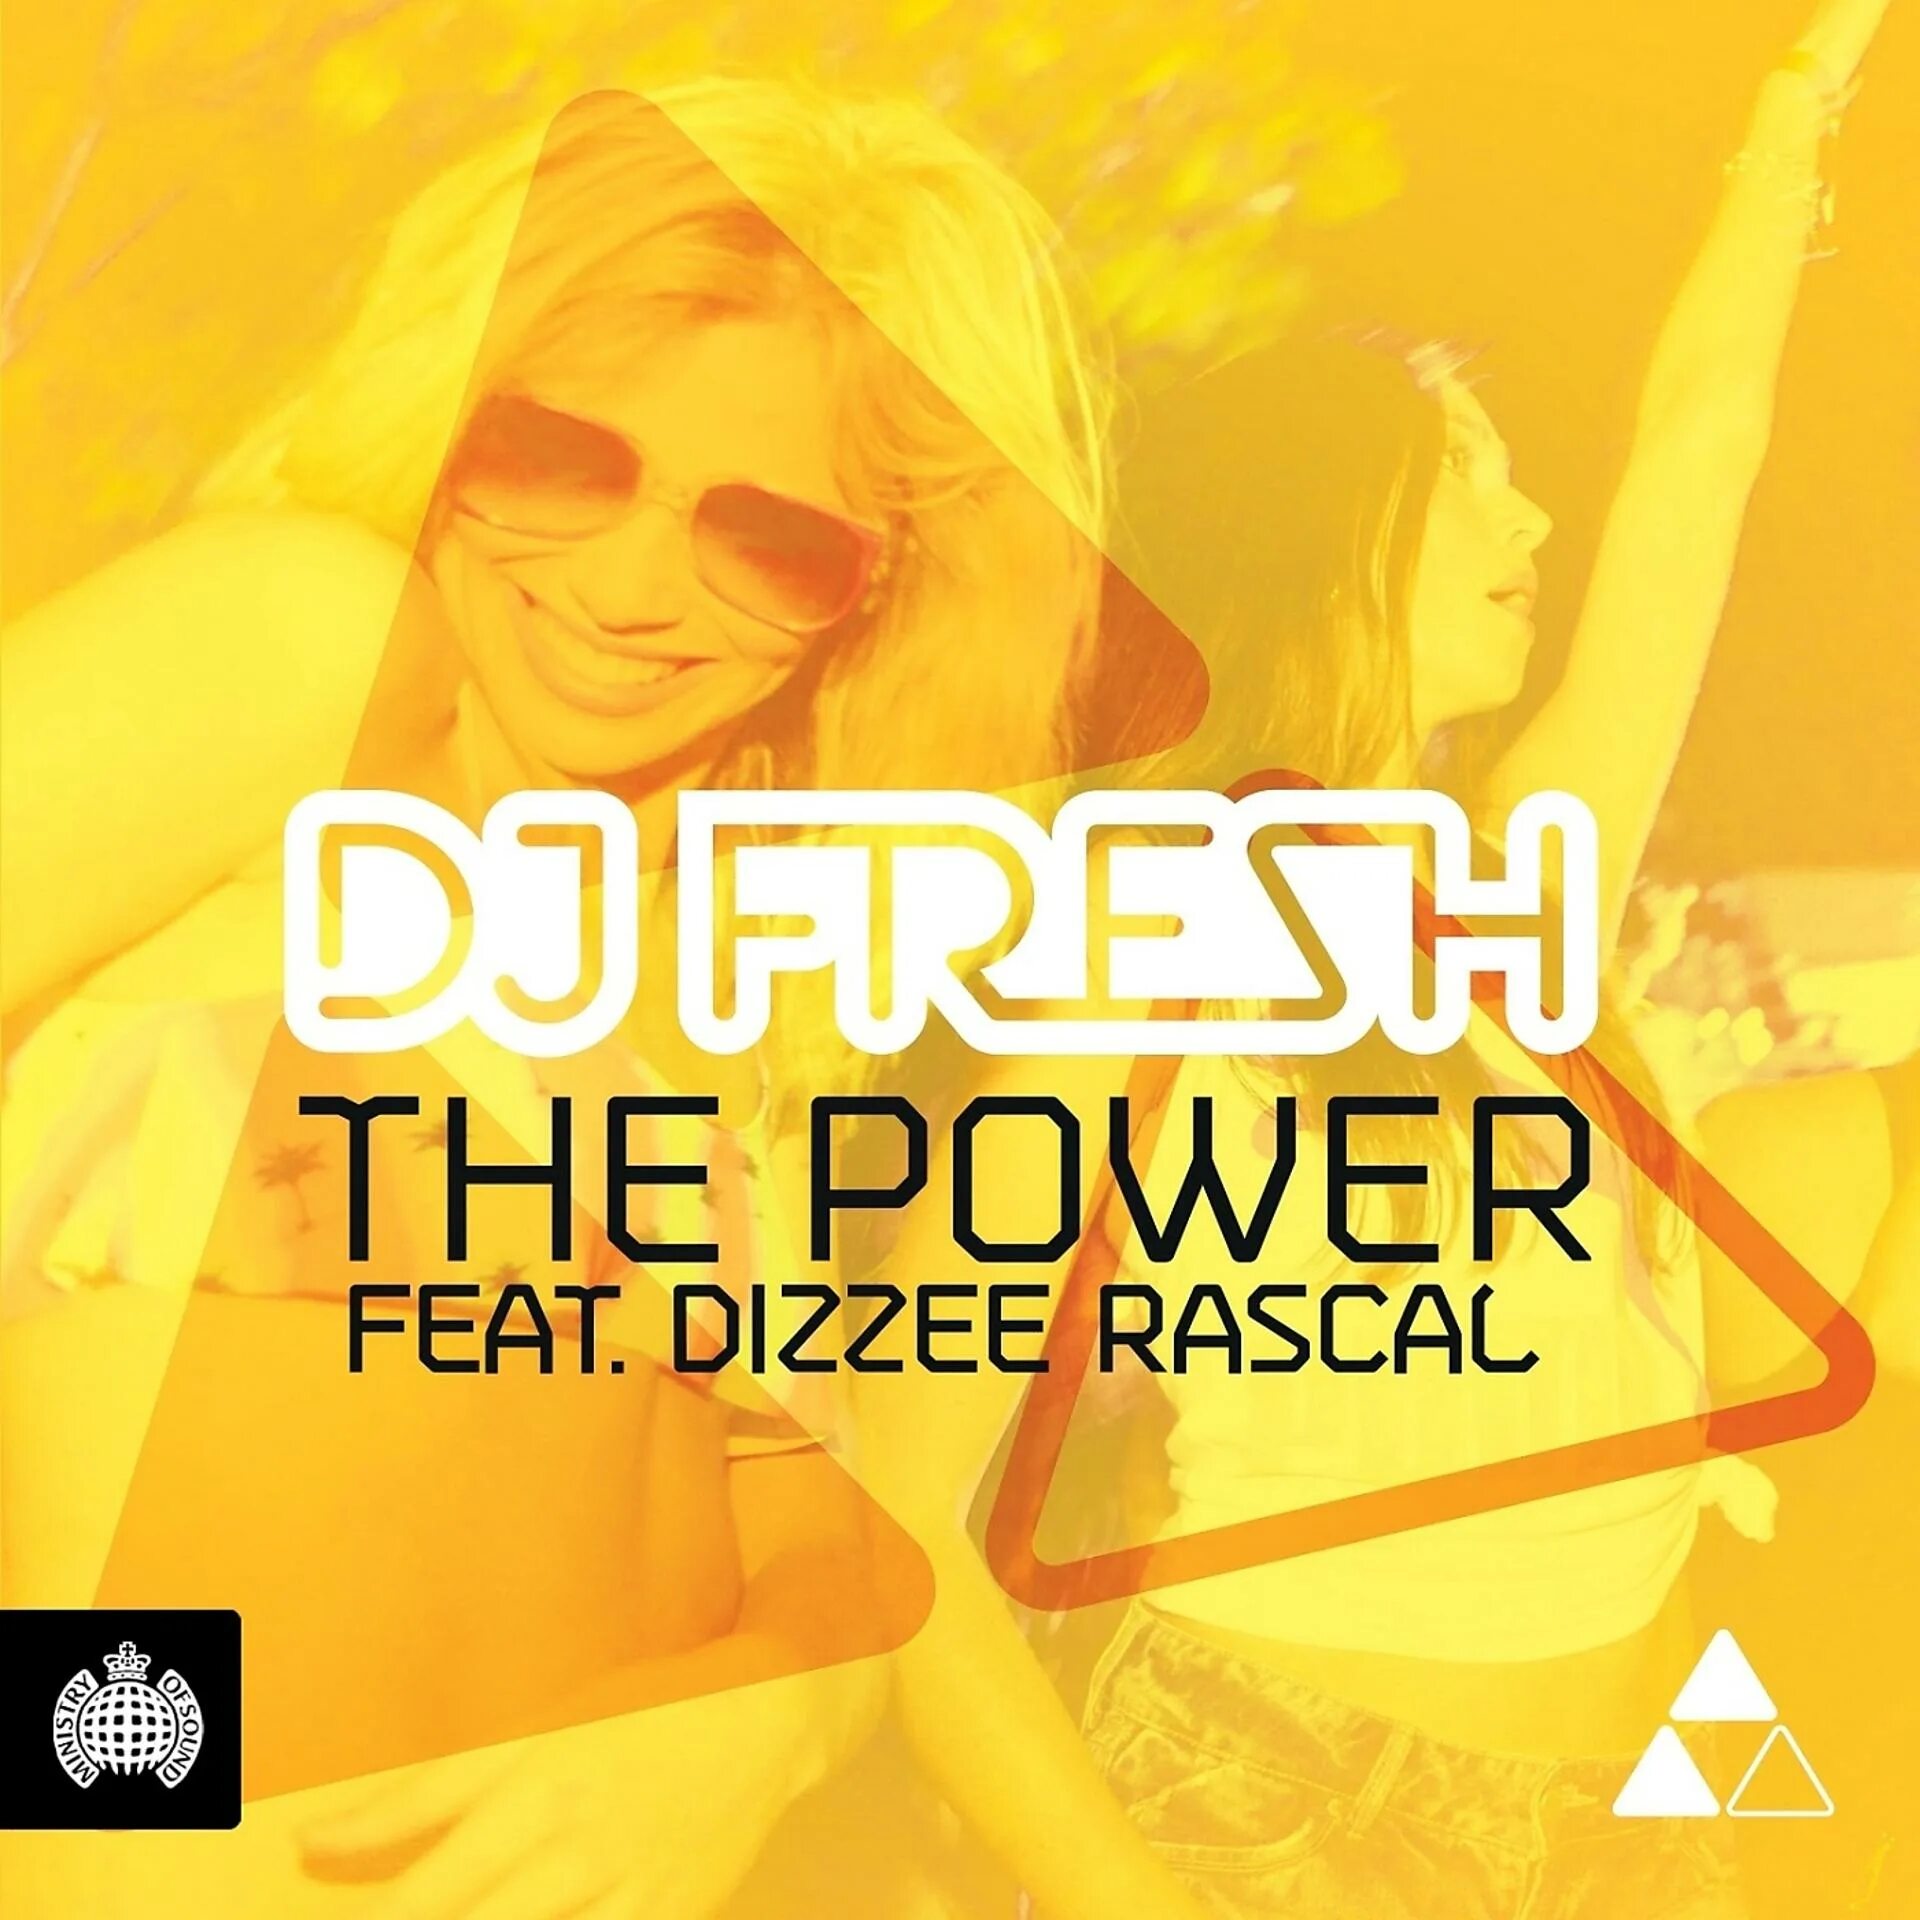 DJ Fresh the Power. DJ Fresh ft. Dizzee Rascal - the Power (Datsik Remix). Holiday Dizzee Rascal. DJ Fresh - Drive.